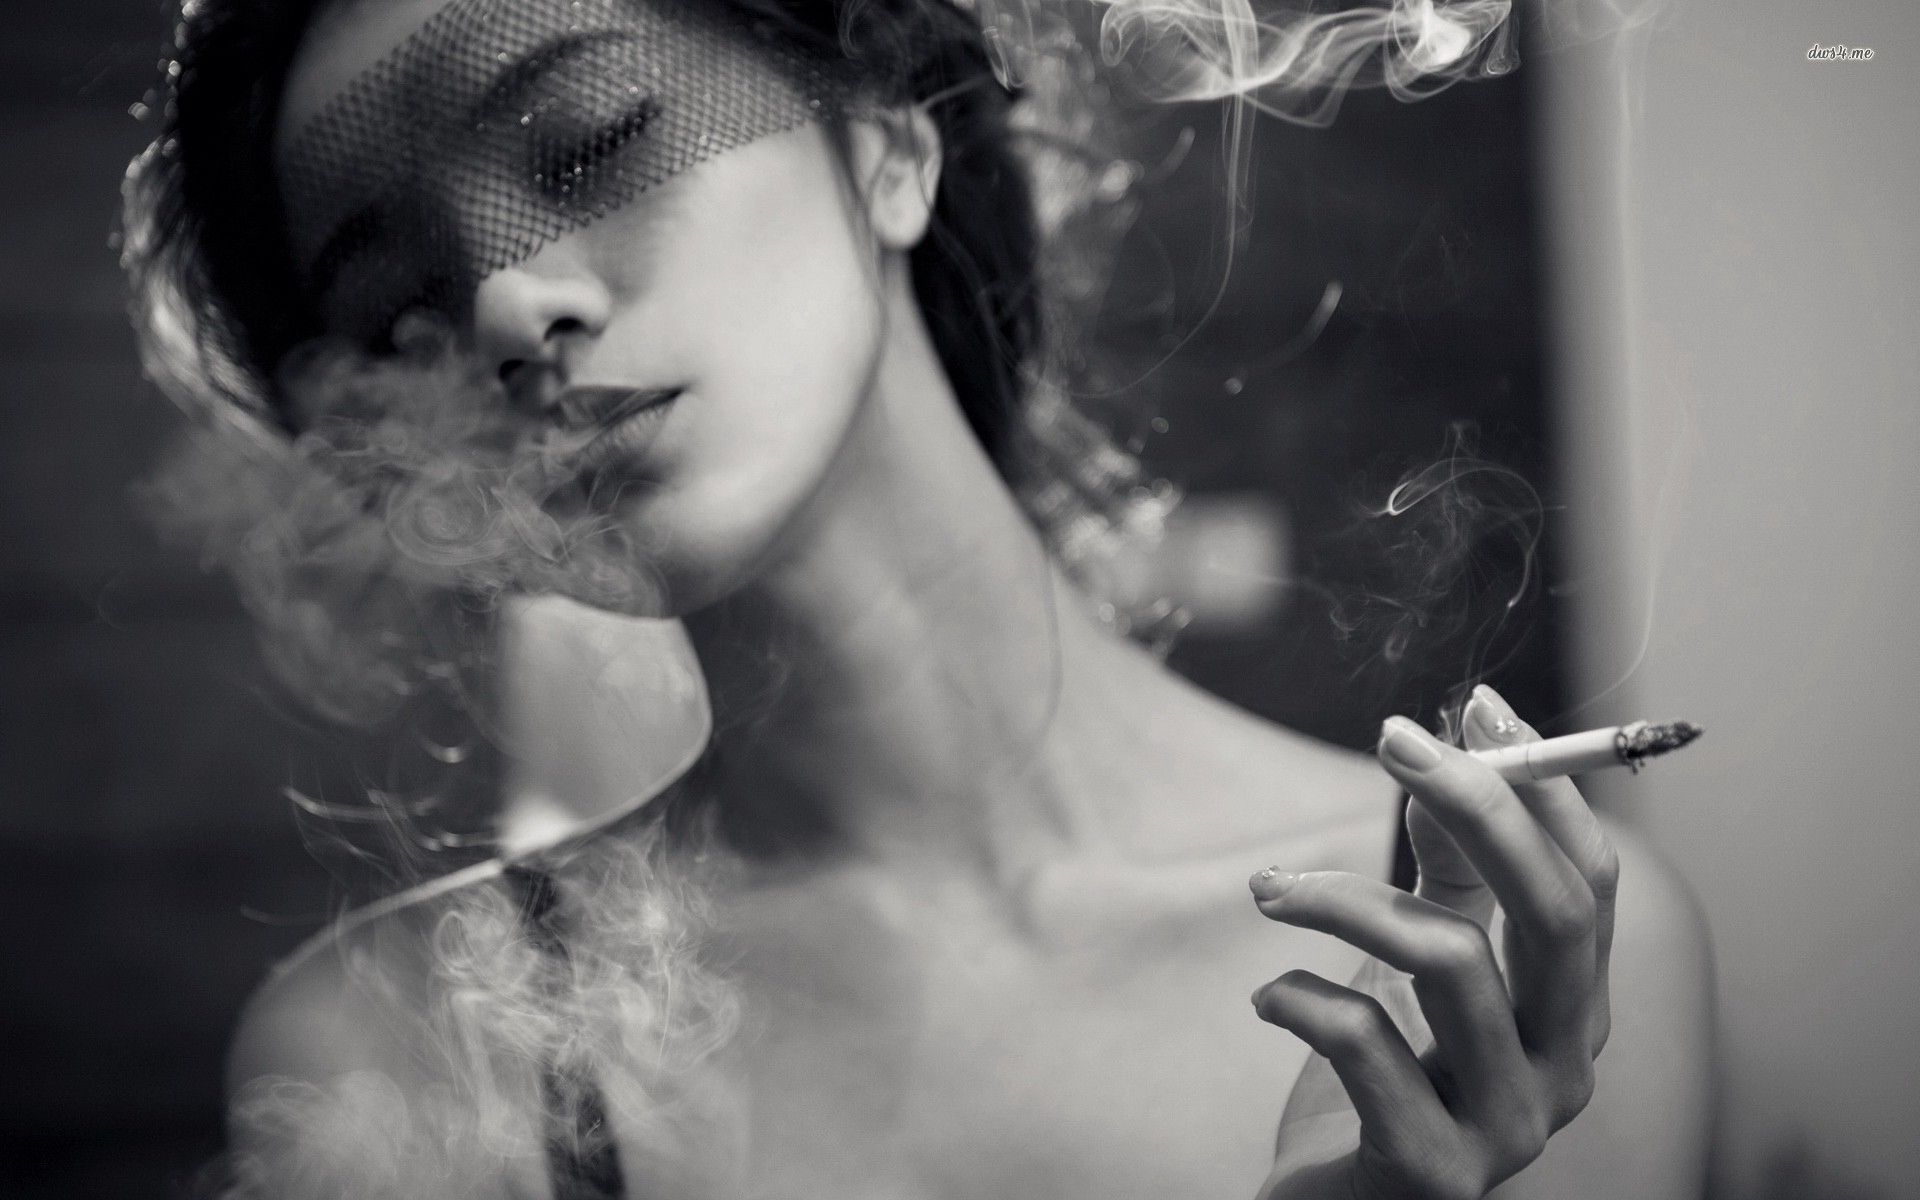 smoking girls - Google Search | Smoking Hot | Pinterest | Smoking girls